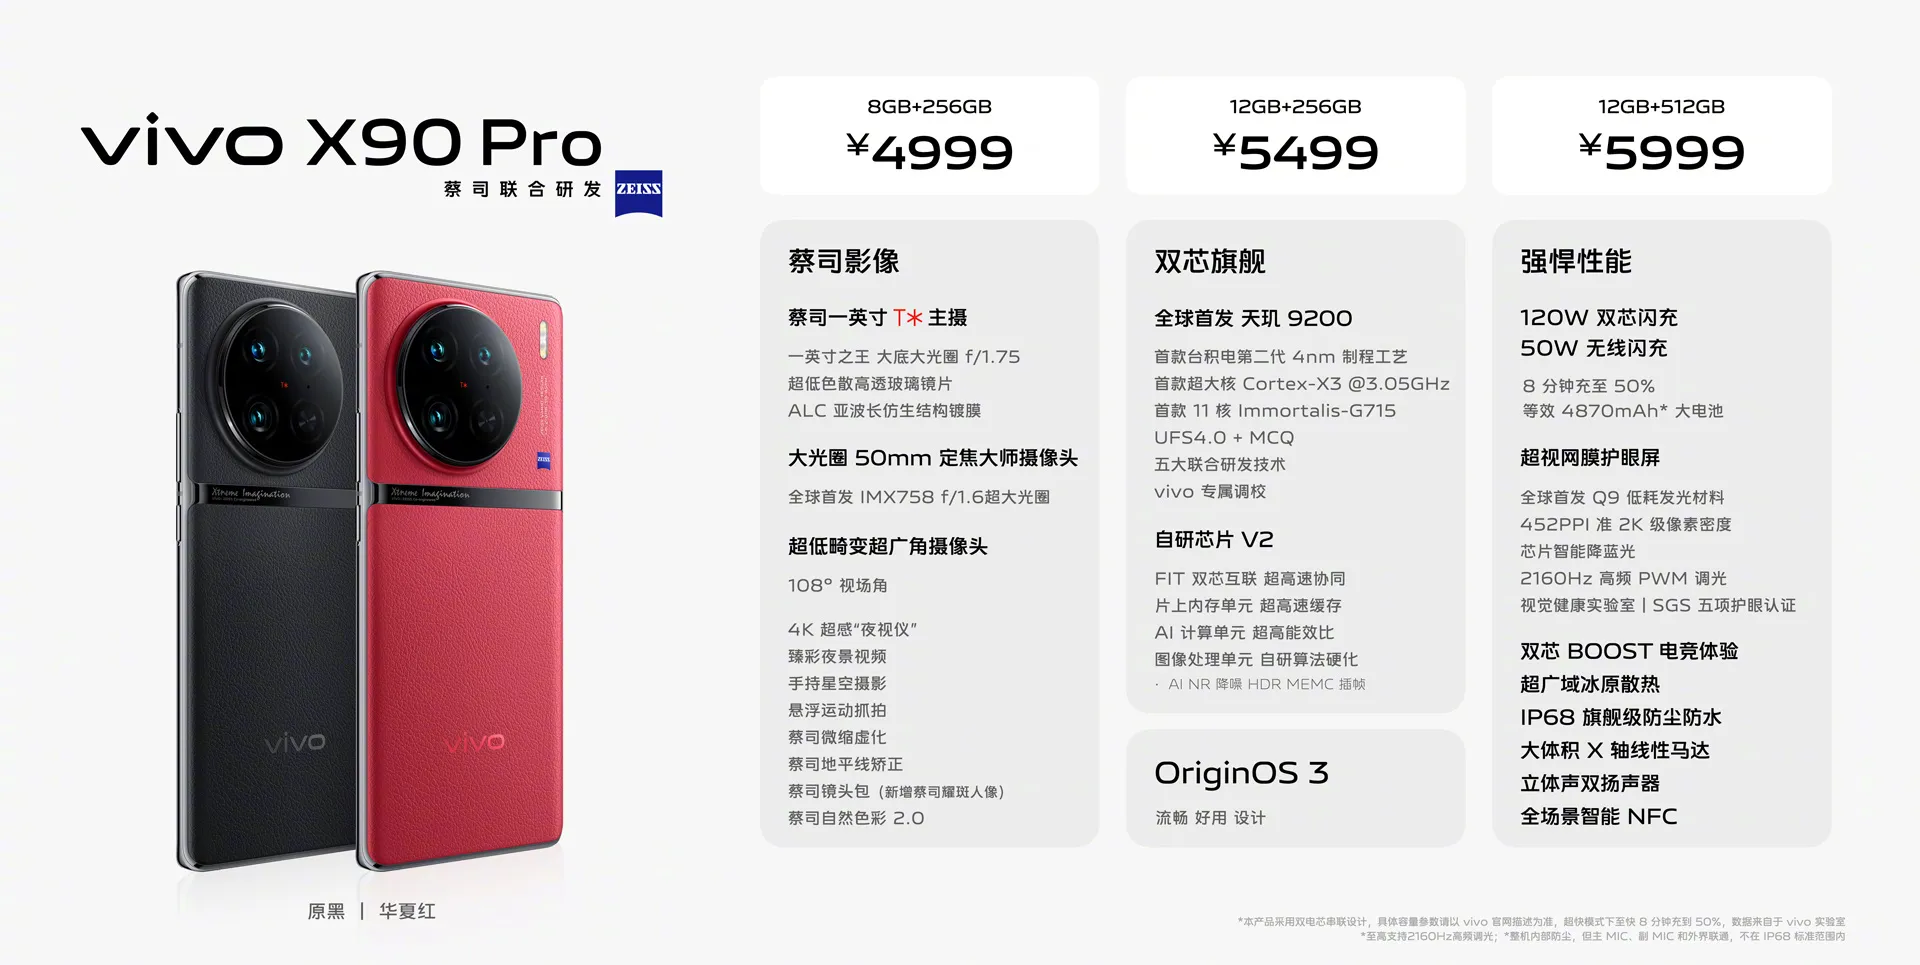 Mức giá của Vivo X90 Pro